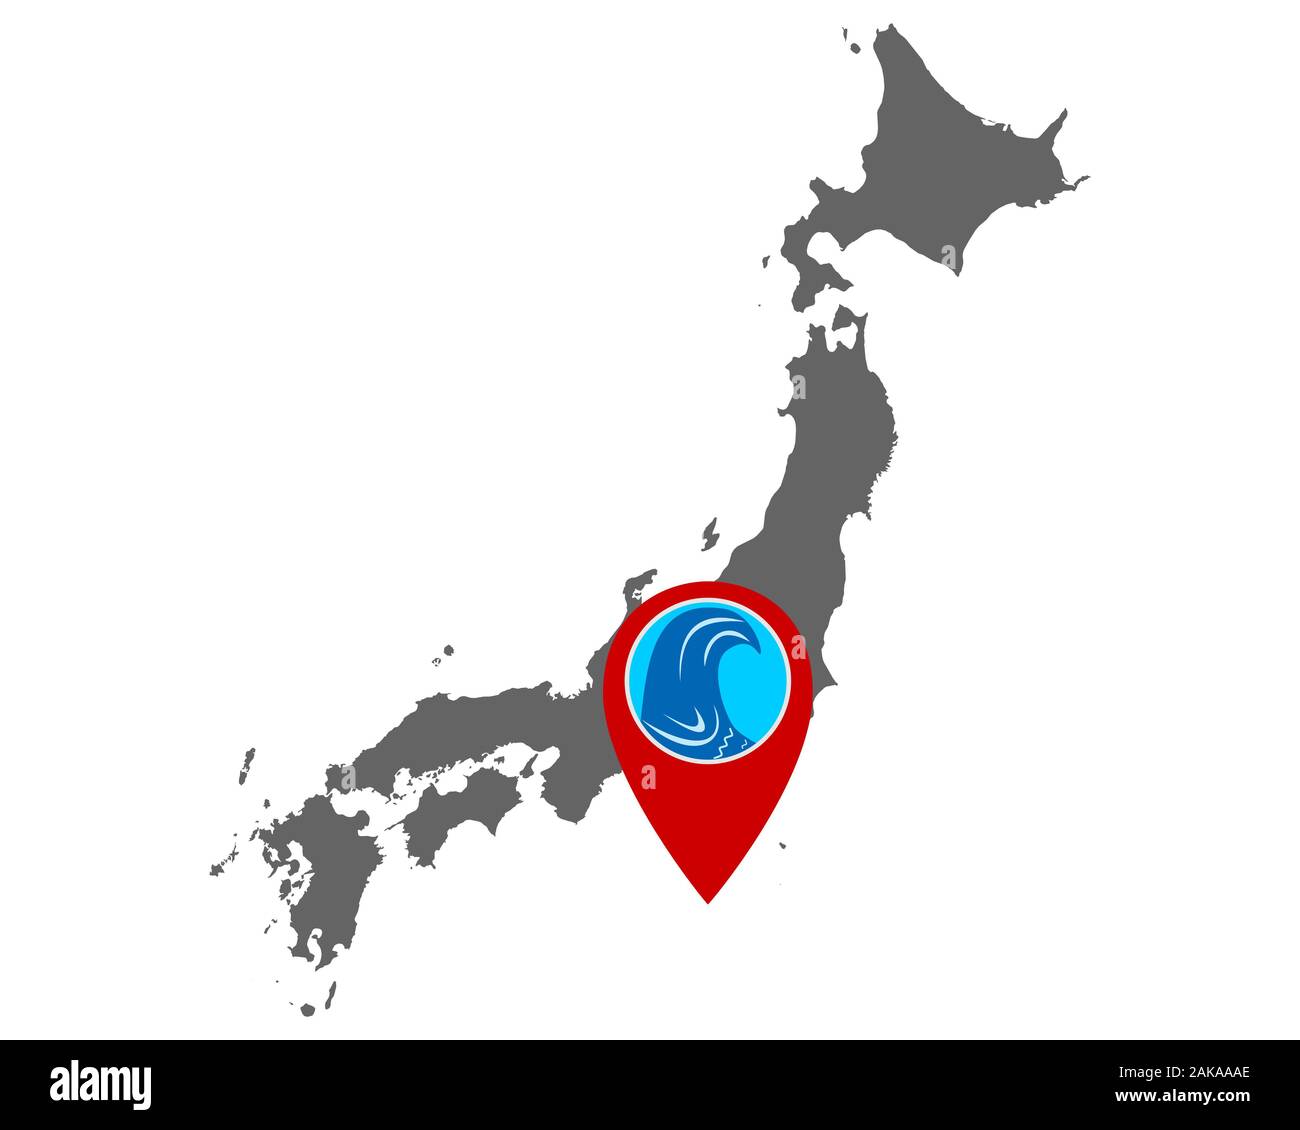 Map of Japan and pin with tsunami warning Stock Photo